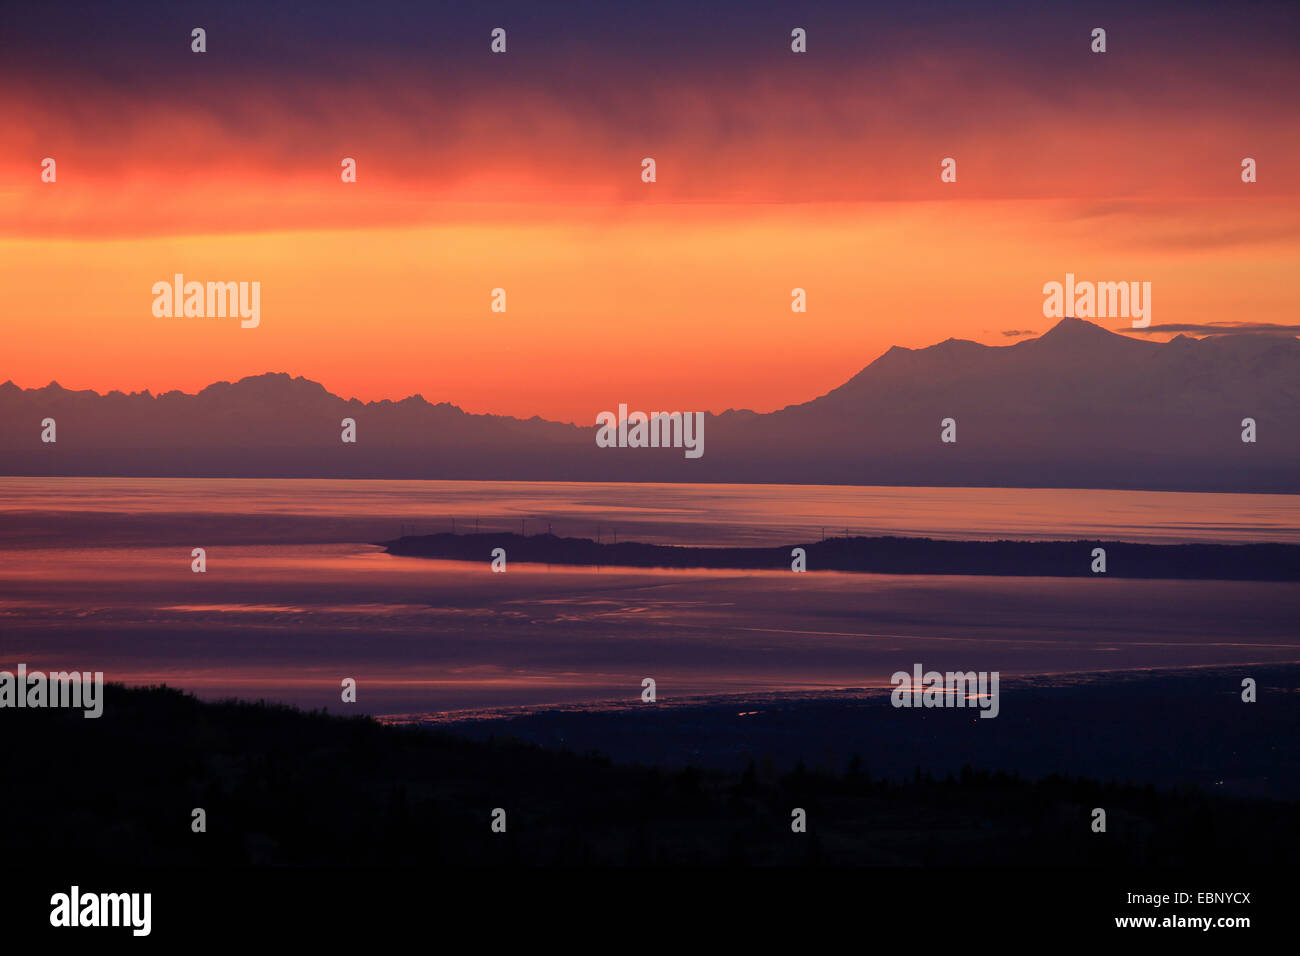 Anzeigen von den Chugach State Park auf Cook Inlet und die Alaska Range, USA, Alaska, Chugach State Park Stockfoto